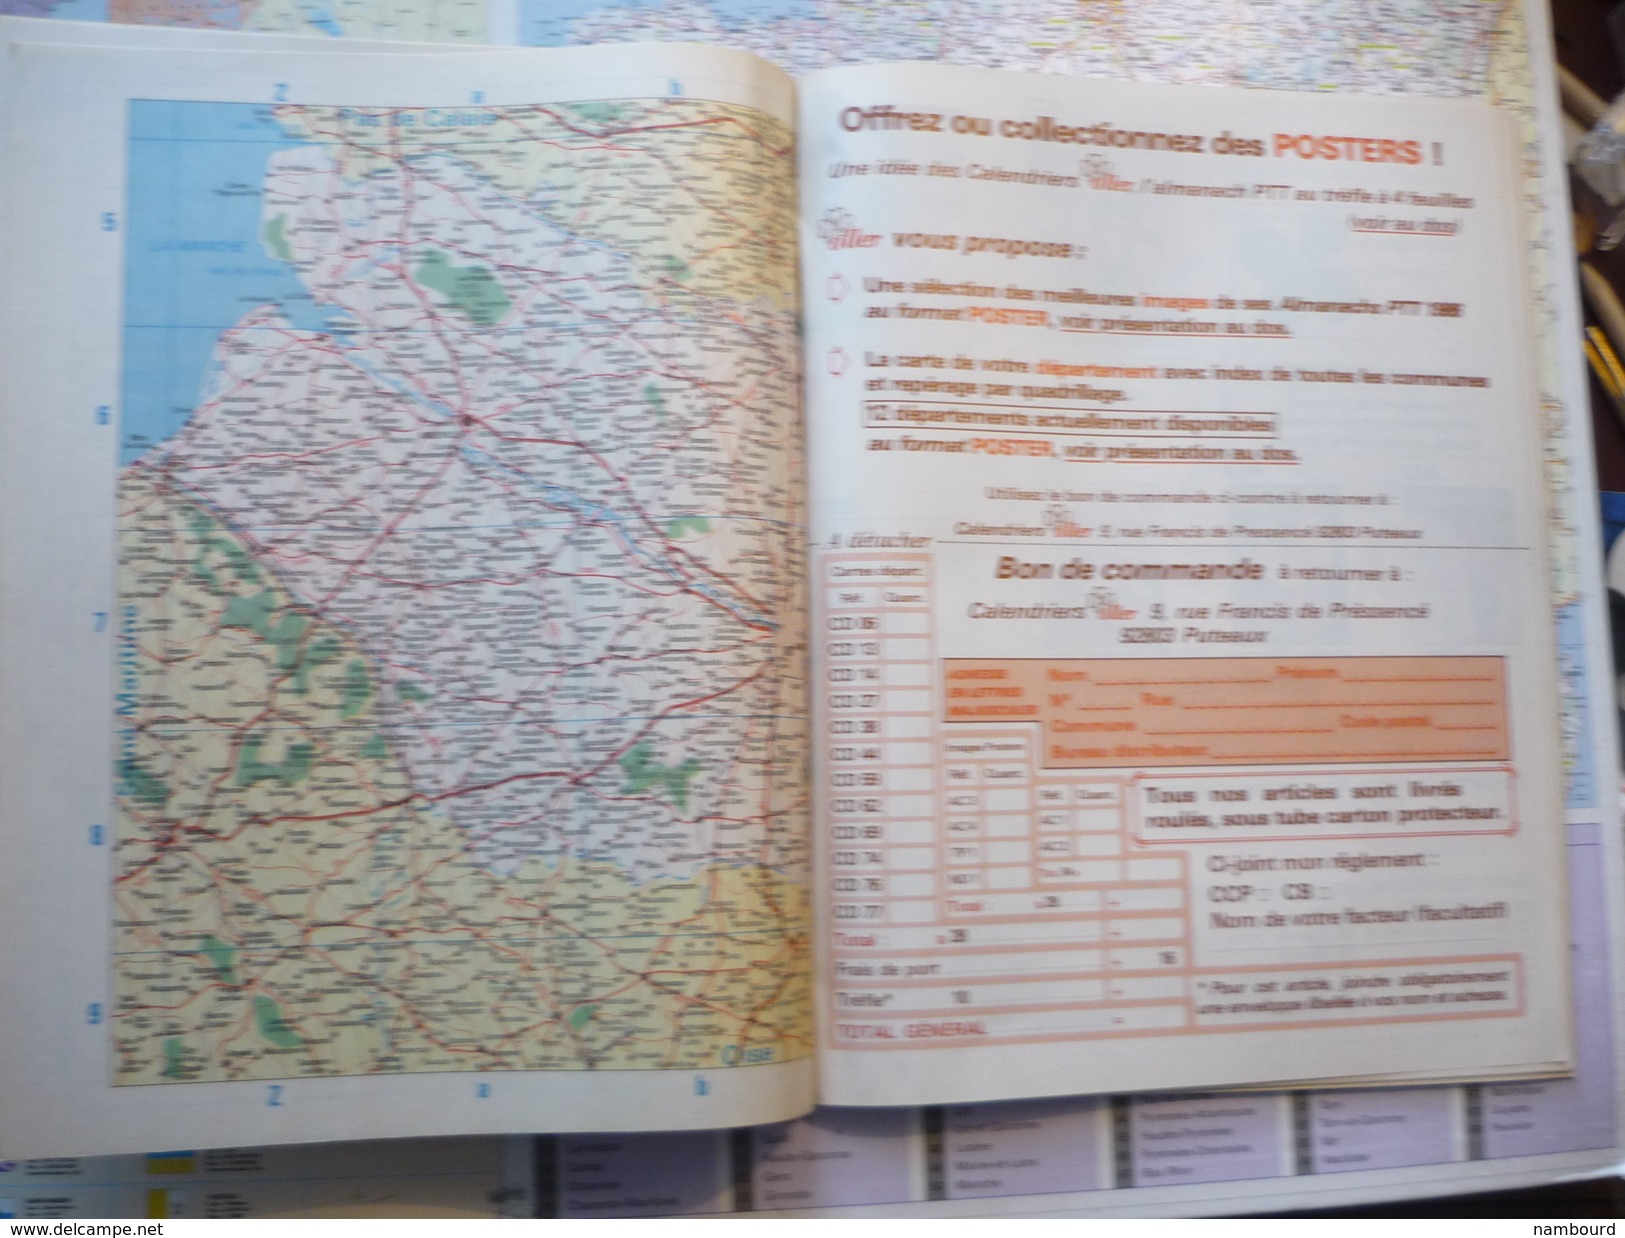 Almanach des PTT 1986 Colley / Enfants et Chèvre / département de la Somme